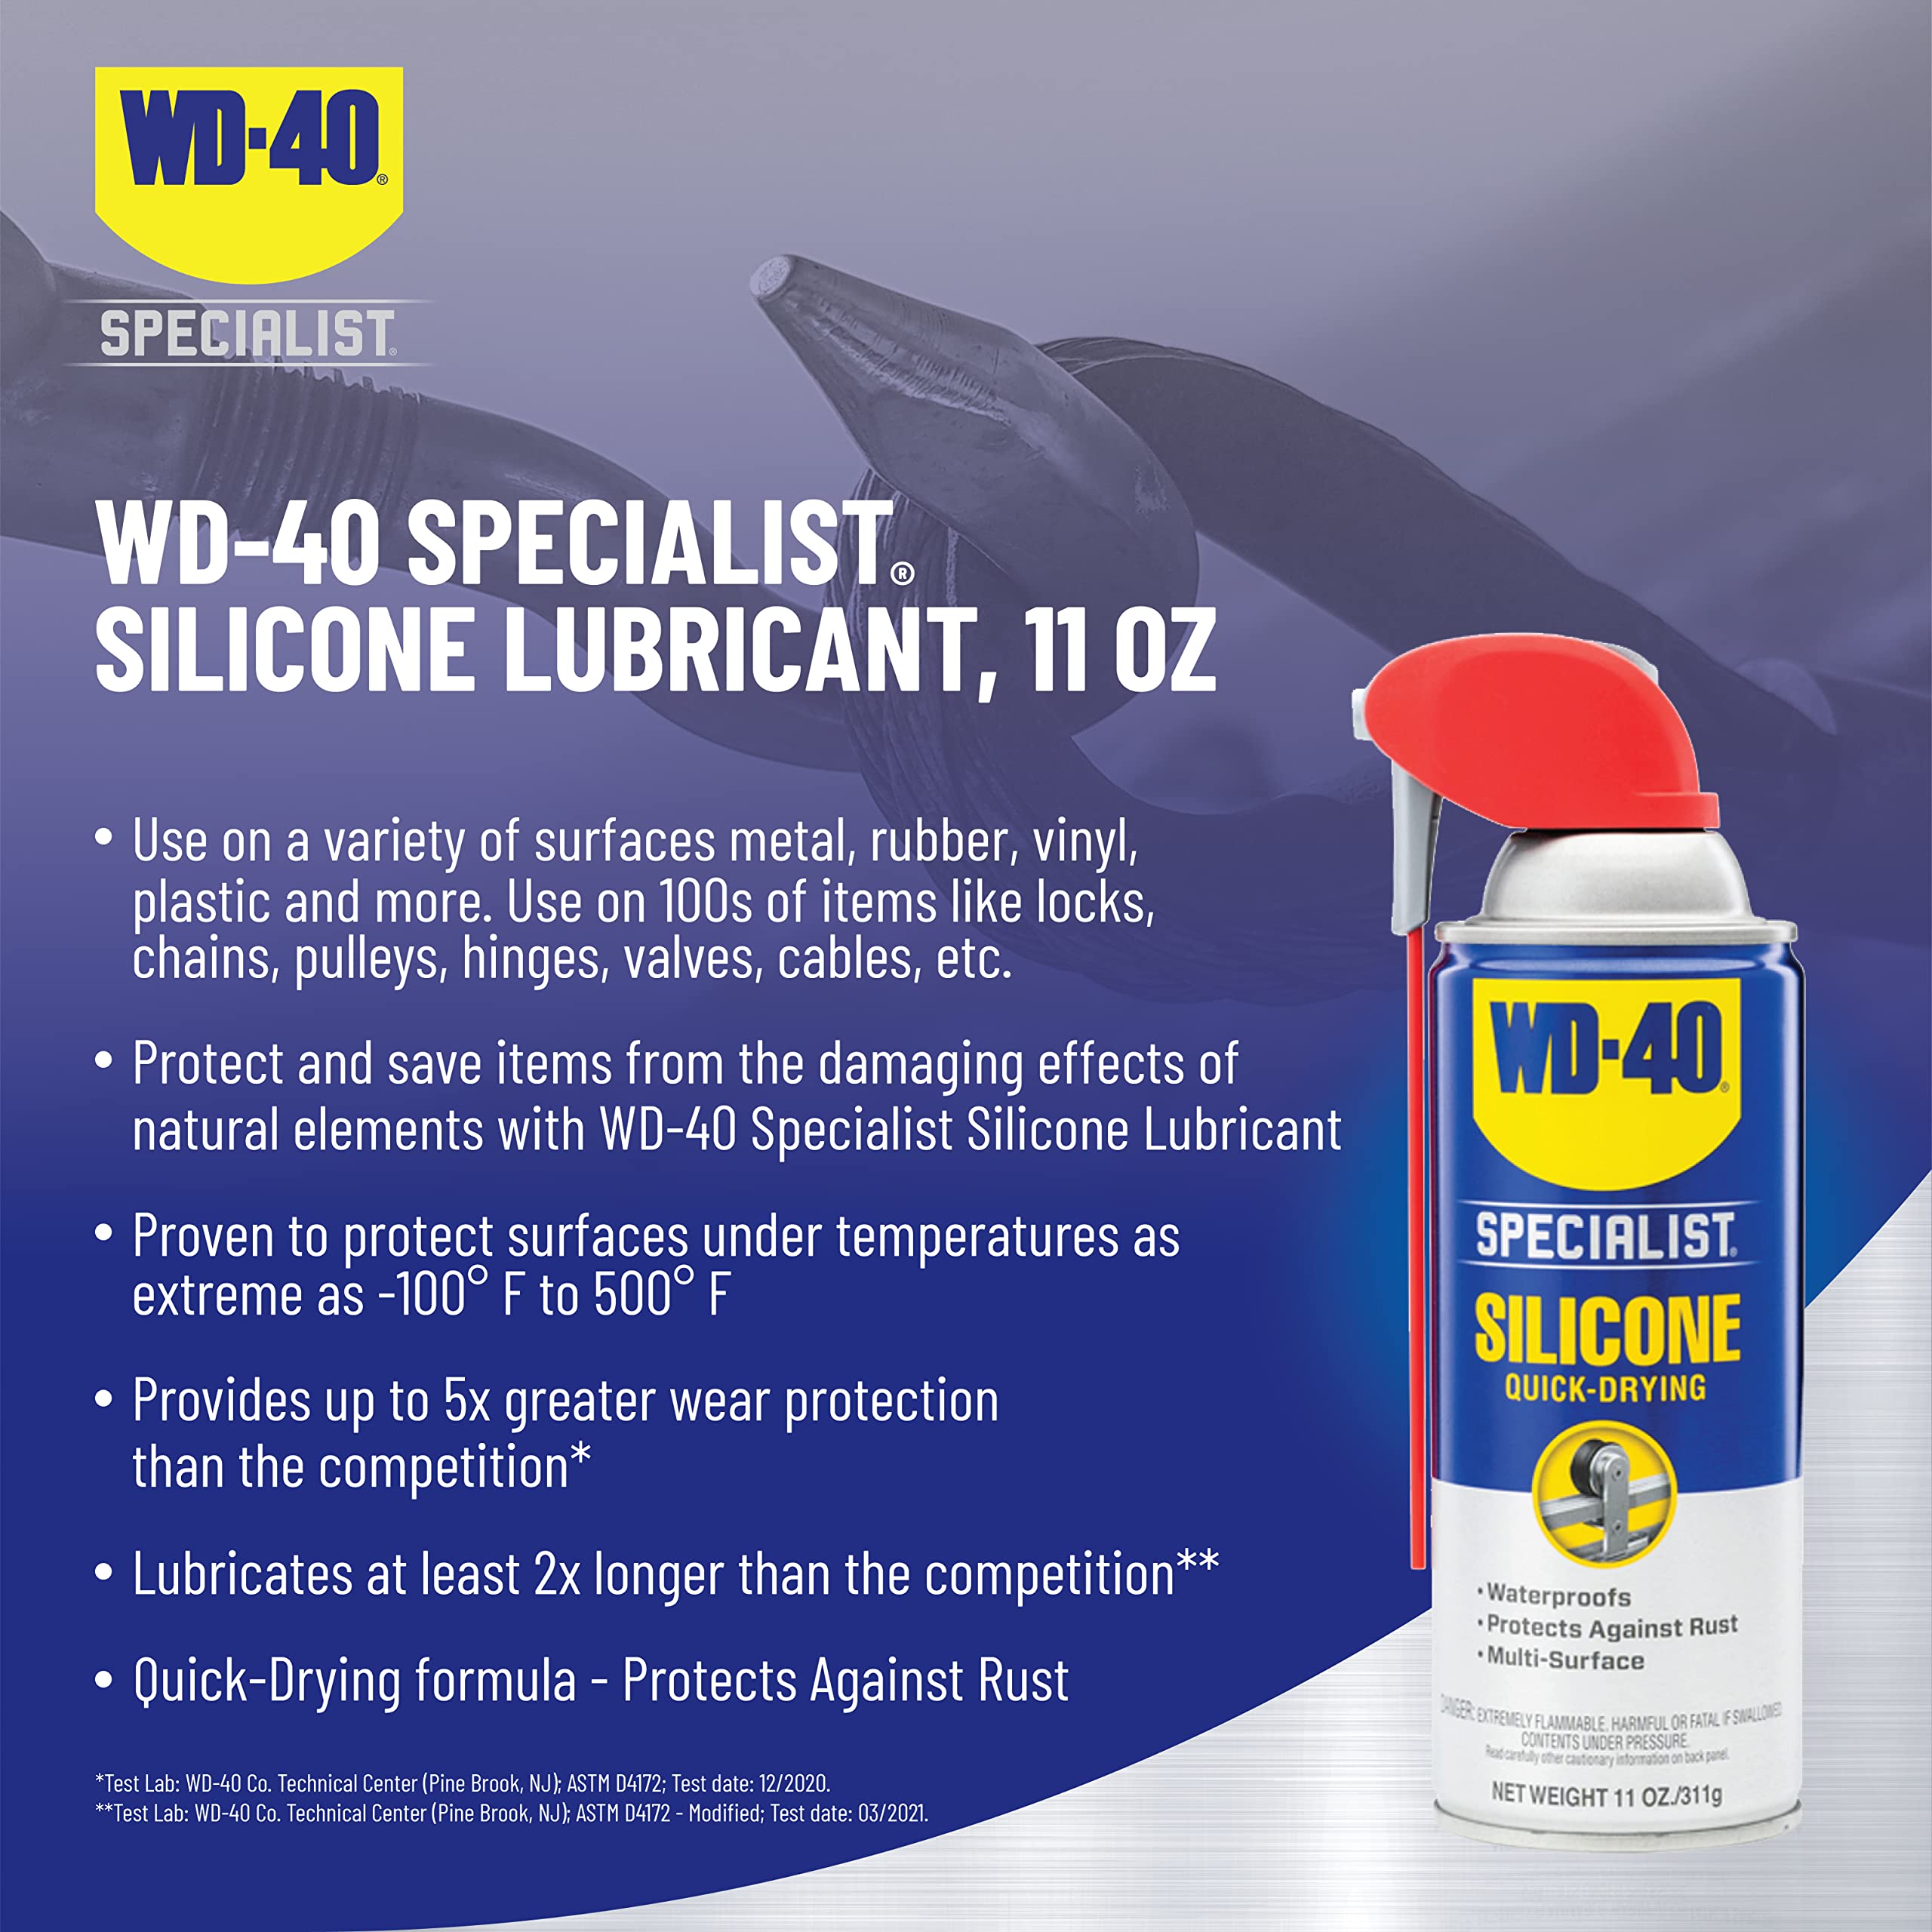 WD-40 Specialist Silicone Lubricant with SMART STRAW SPRAYS 2 WAYS, 11 OZ